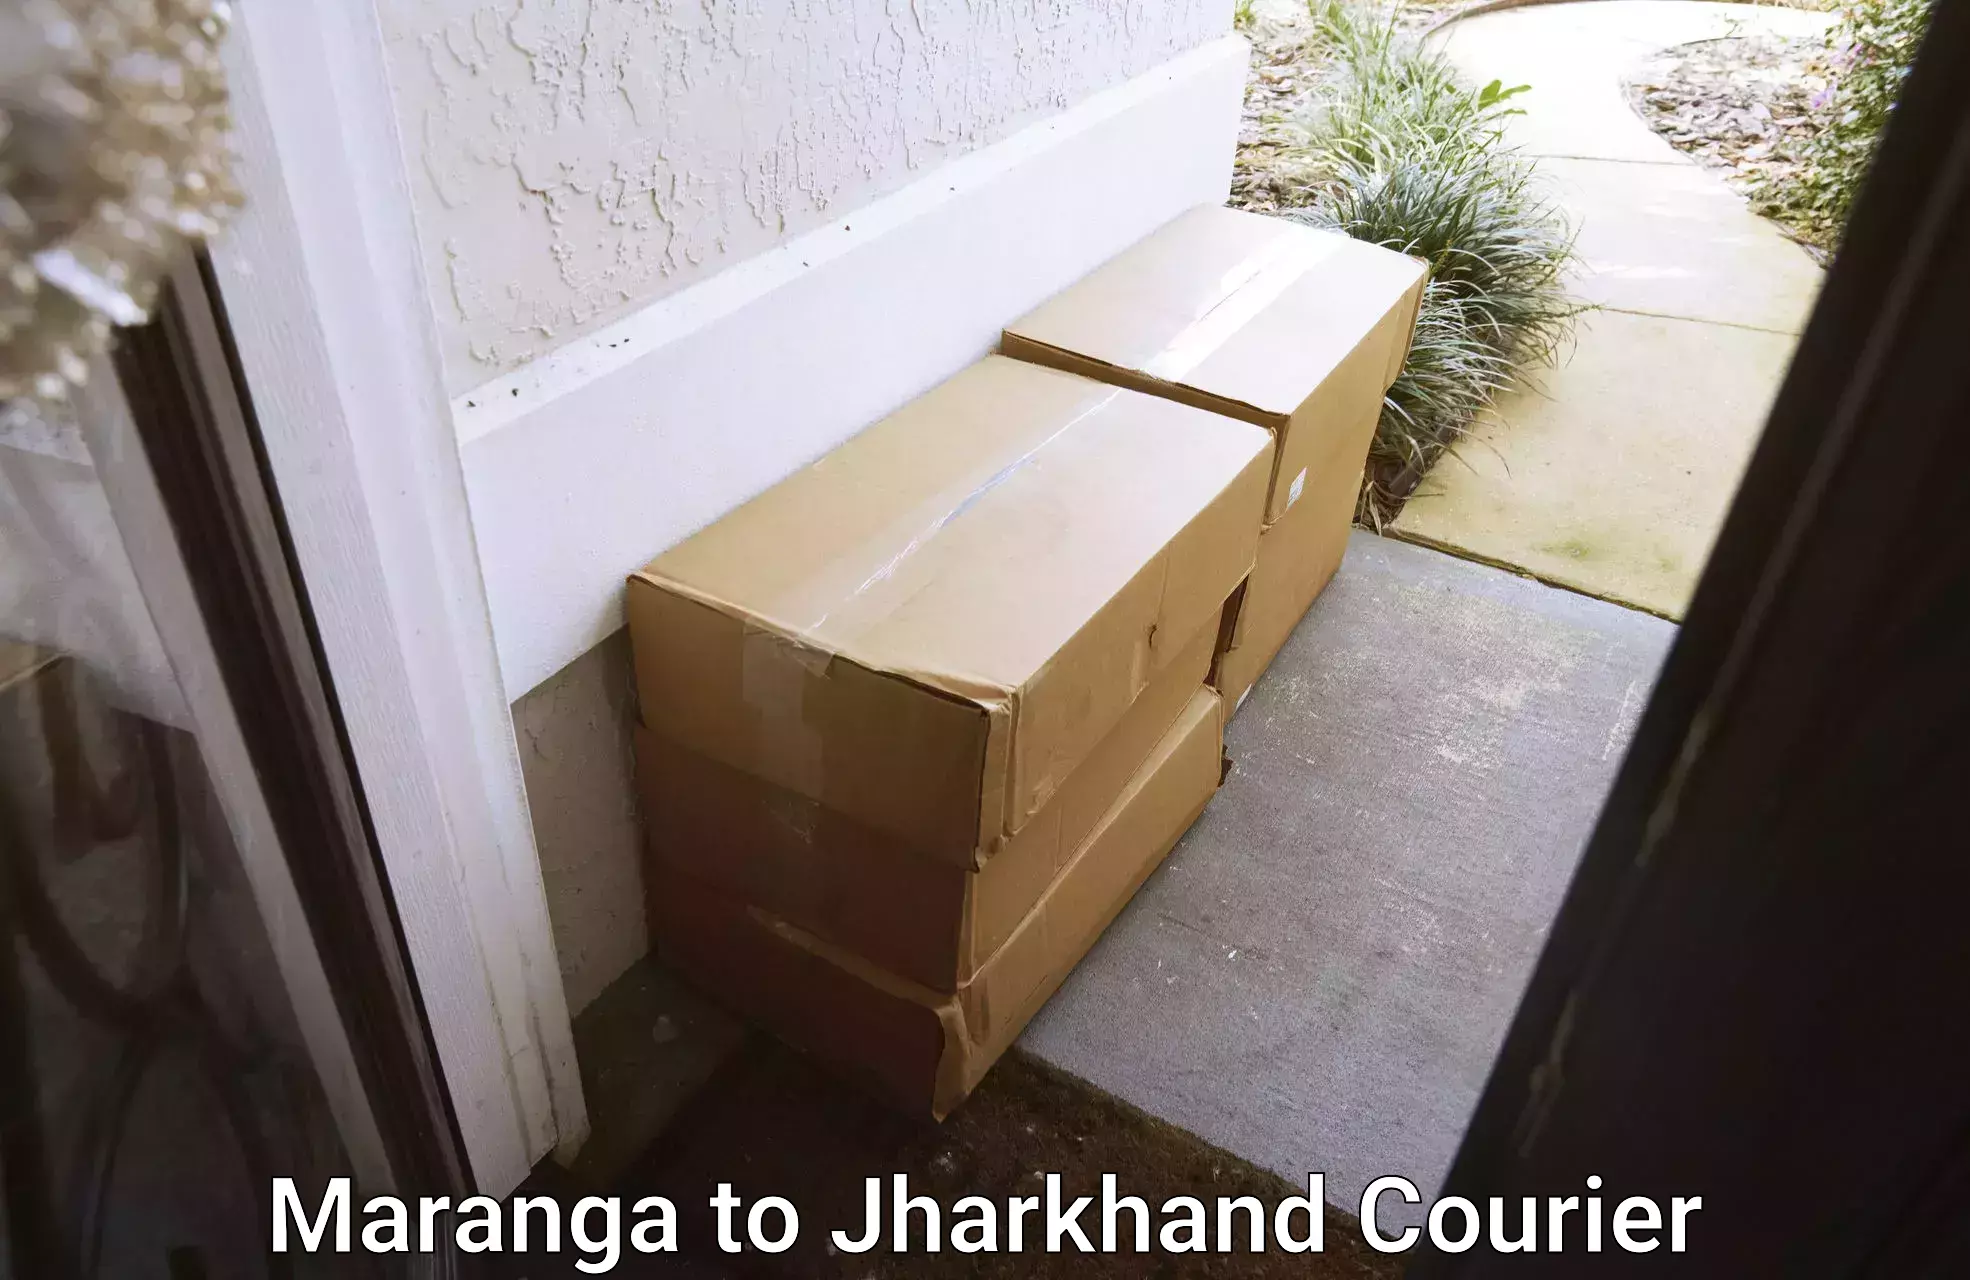 Home shifting experts Maranga to Chandwa